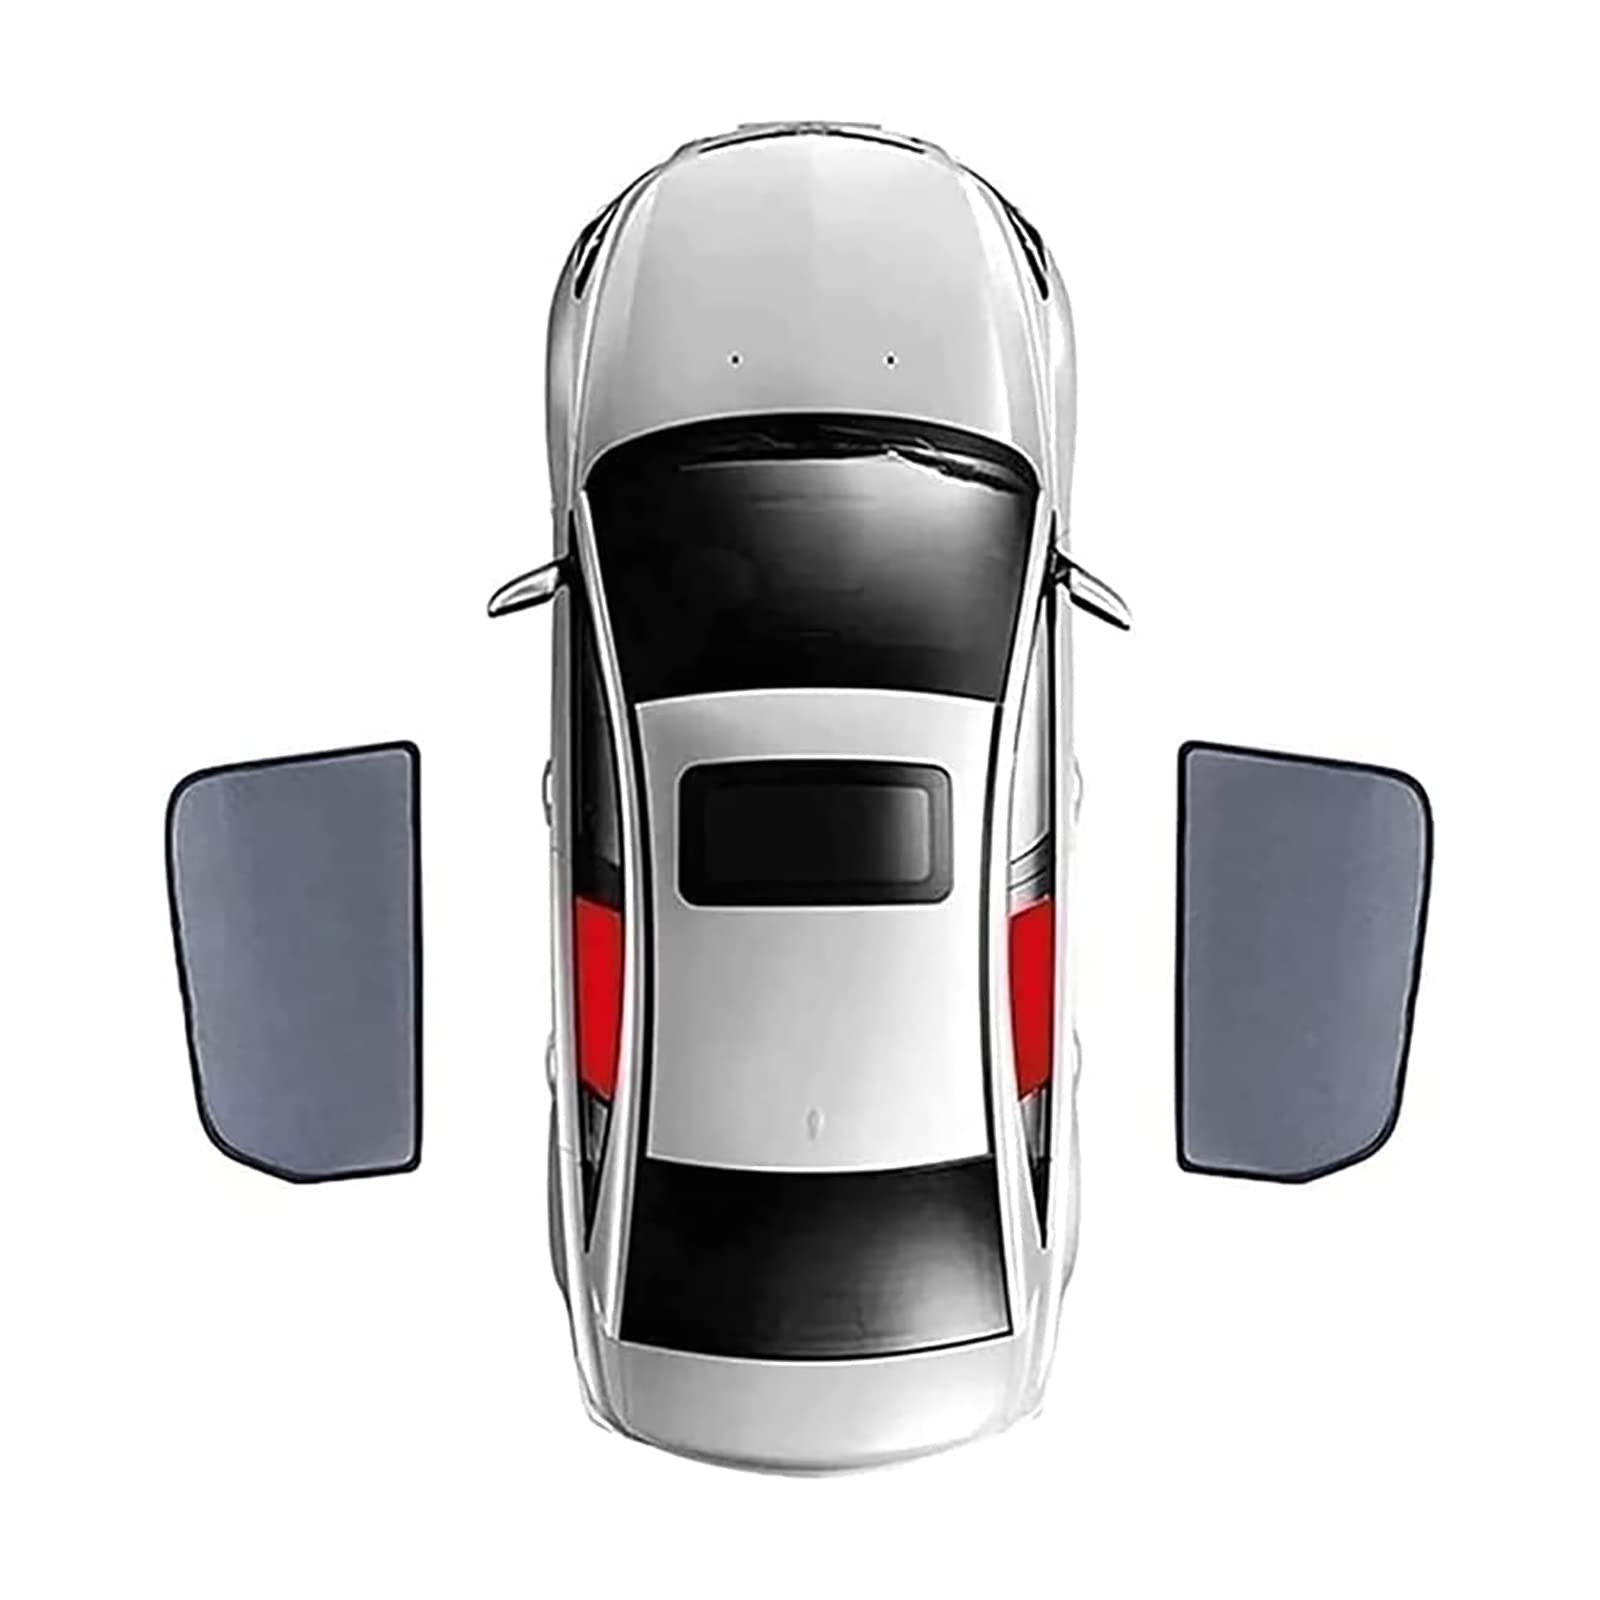 Auto Seitenfenster Sonnenschutz für BMW X5 F15 2013-2018, Vordere und Hintere Seitenfenster Atmungsaktives UV Schutz Privacy Protection Sonnenschutz Accessories,2pcs Rear Side Windows von MSTMAZZ